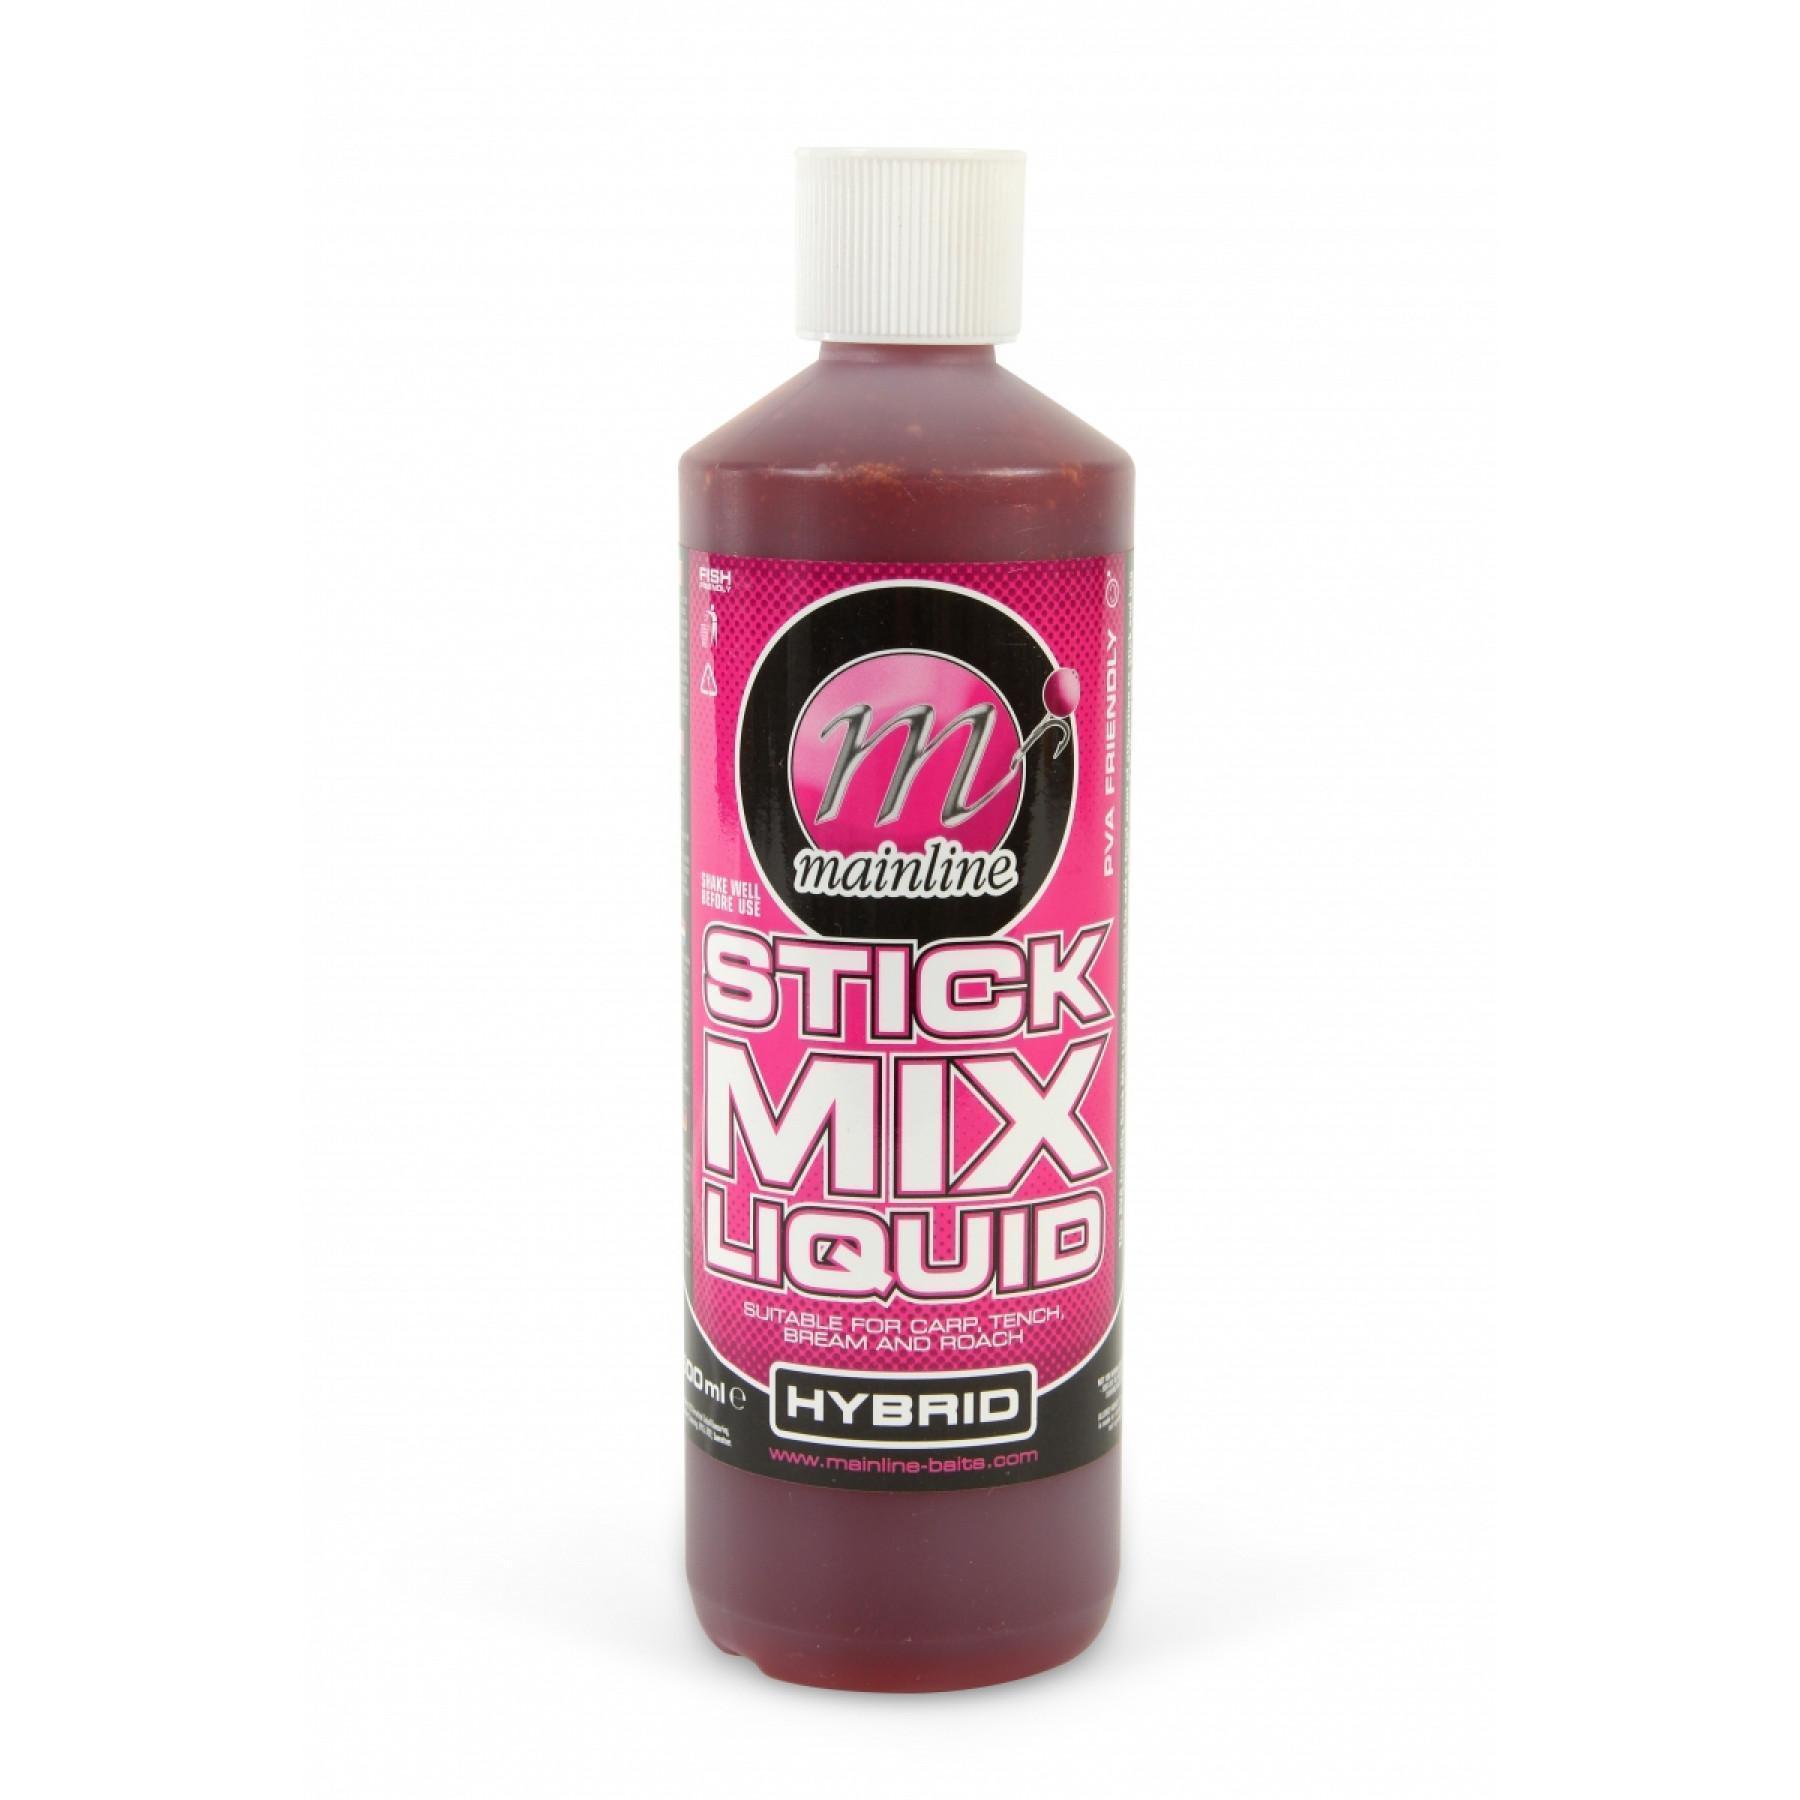 Blötläggningsvätska Mainline Stick Mix Liquid Hybrid 500 ml